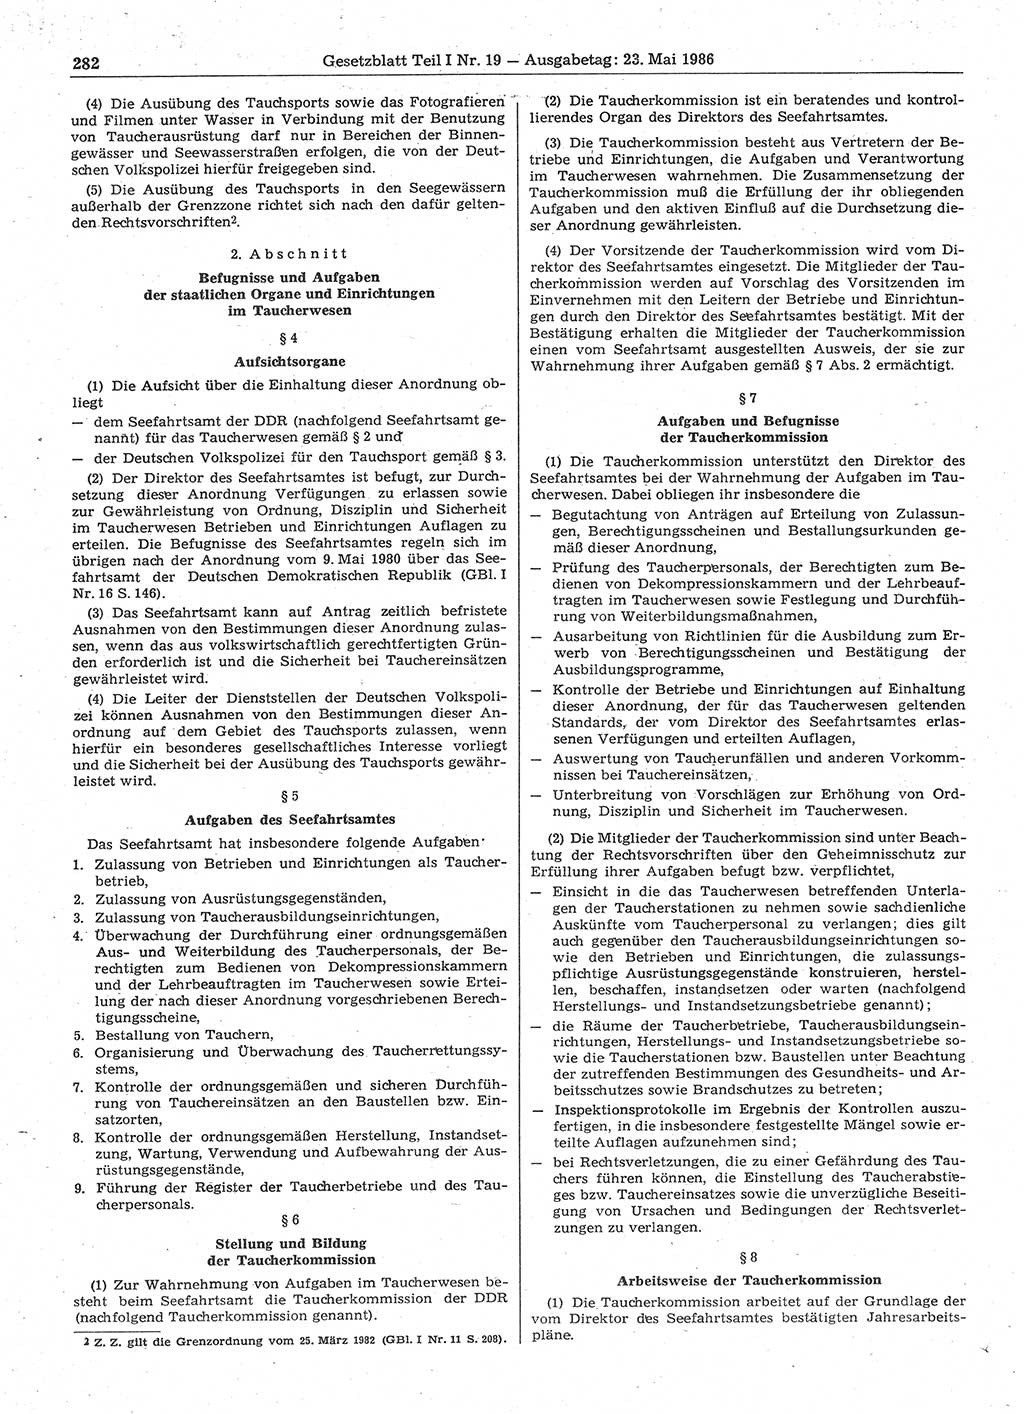 Gesetzblatt (GBl.) der Deutschen Demokratischen Republik (DDR) Teil Ⅰ 1986, Seite 282 (GBl. DDR Ⅰ 1986, S. 282)